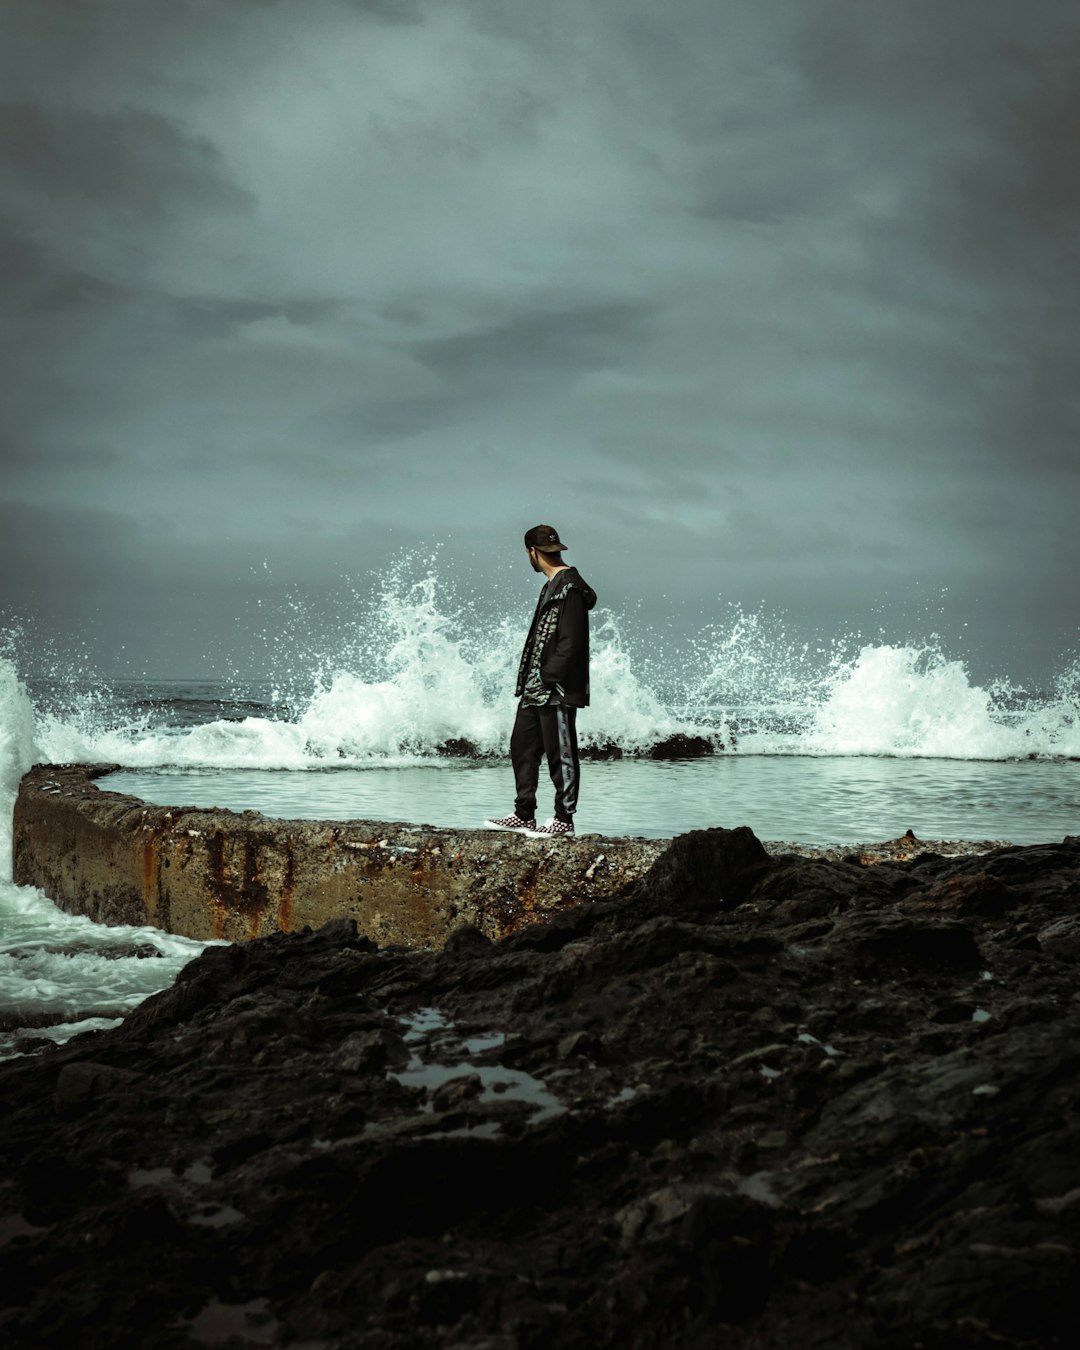 man in black jacket standing on rock near ocean waves